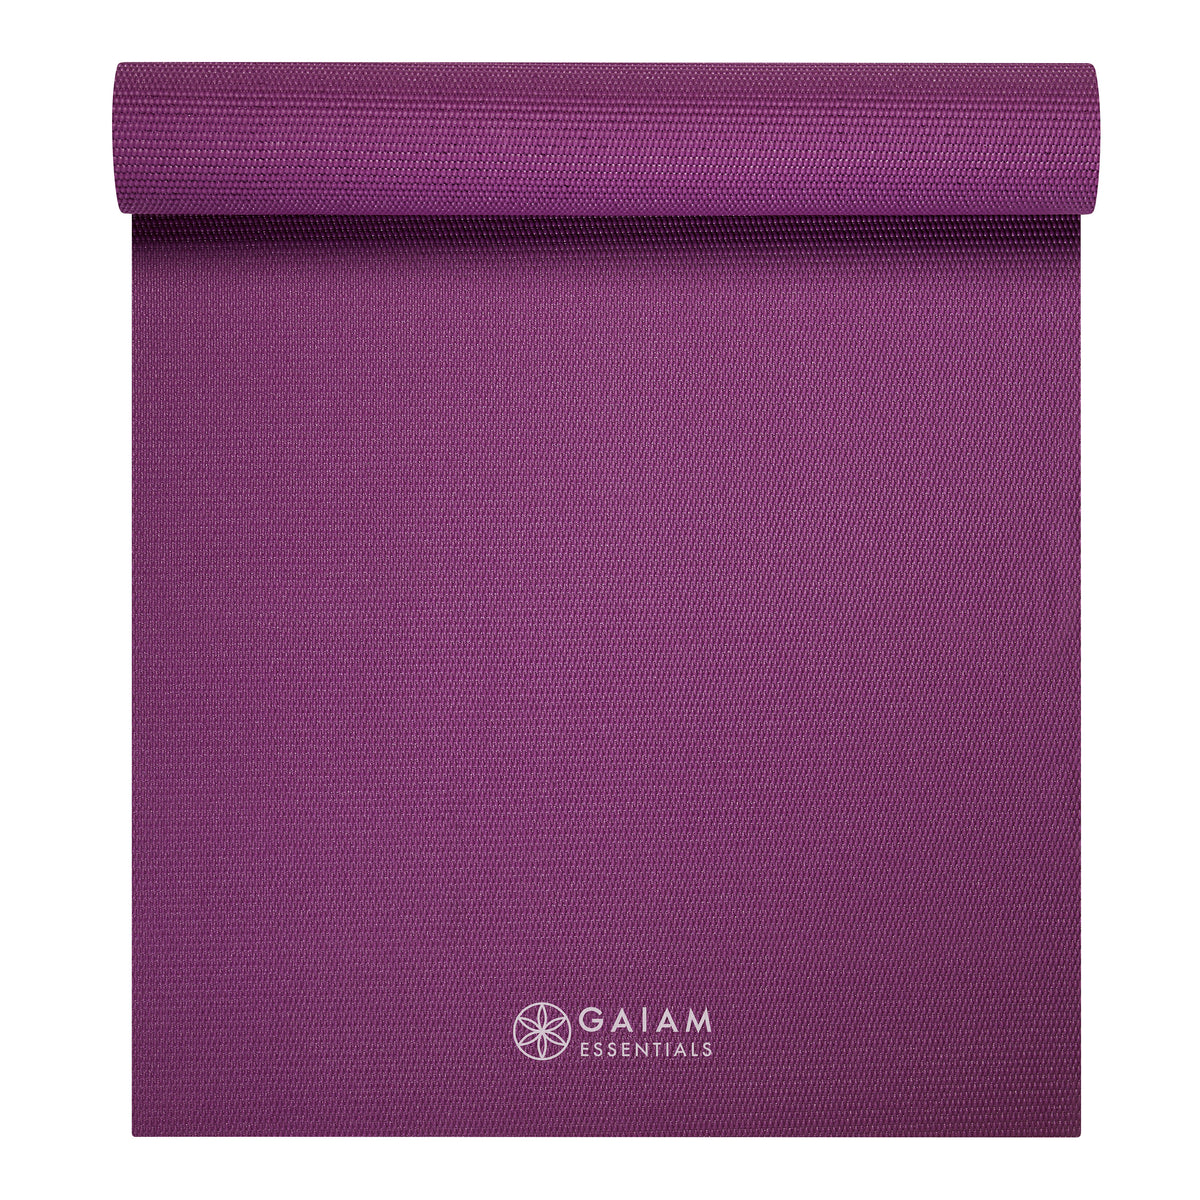 Purpose Printed Yoga Mat - Grey Revolution (6MM) –